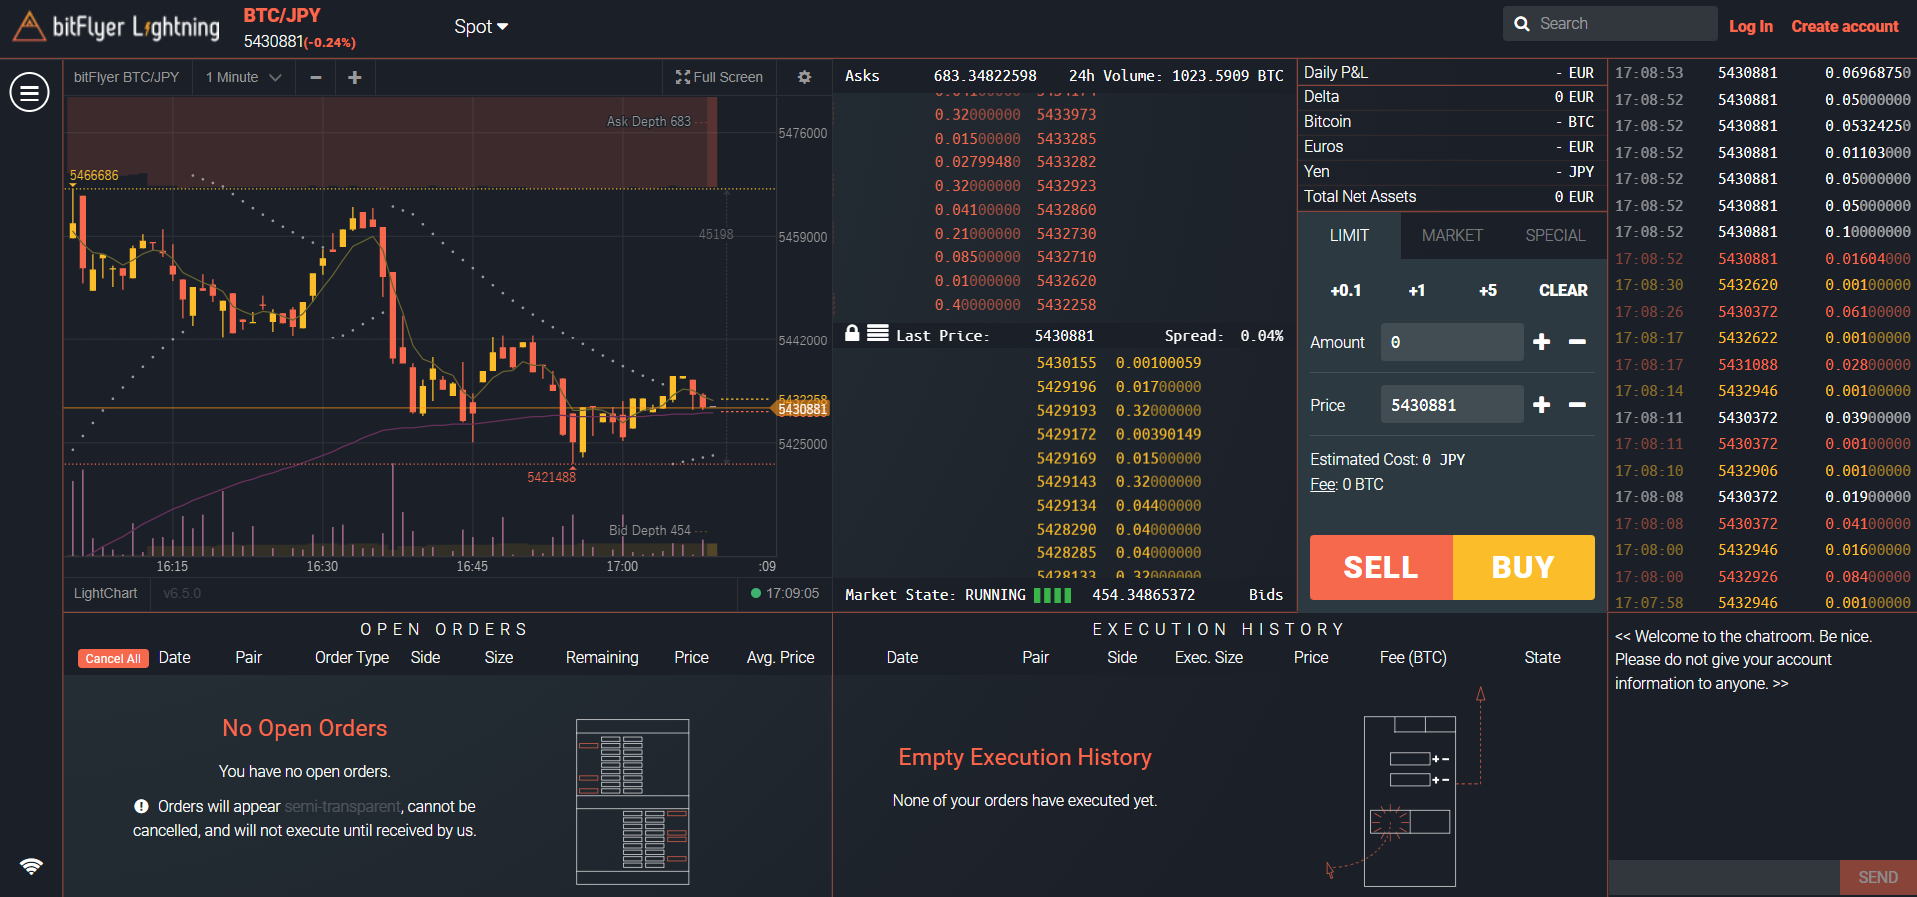 Bitflyer's Lightning trading platform